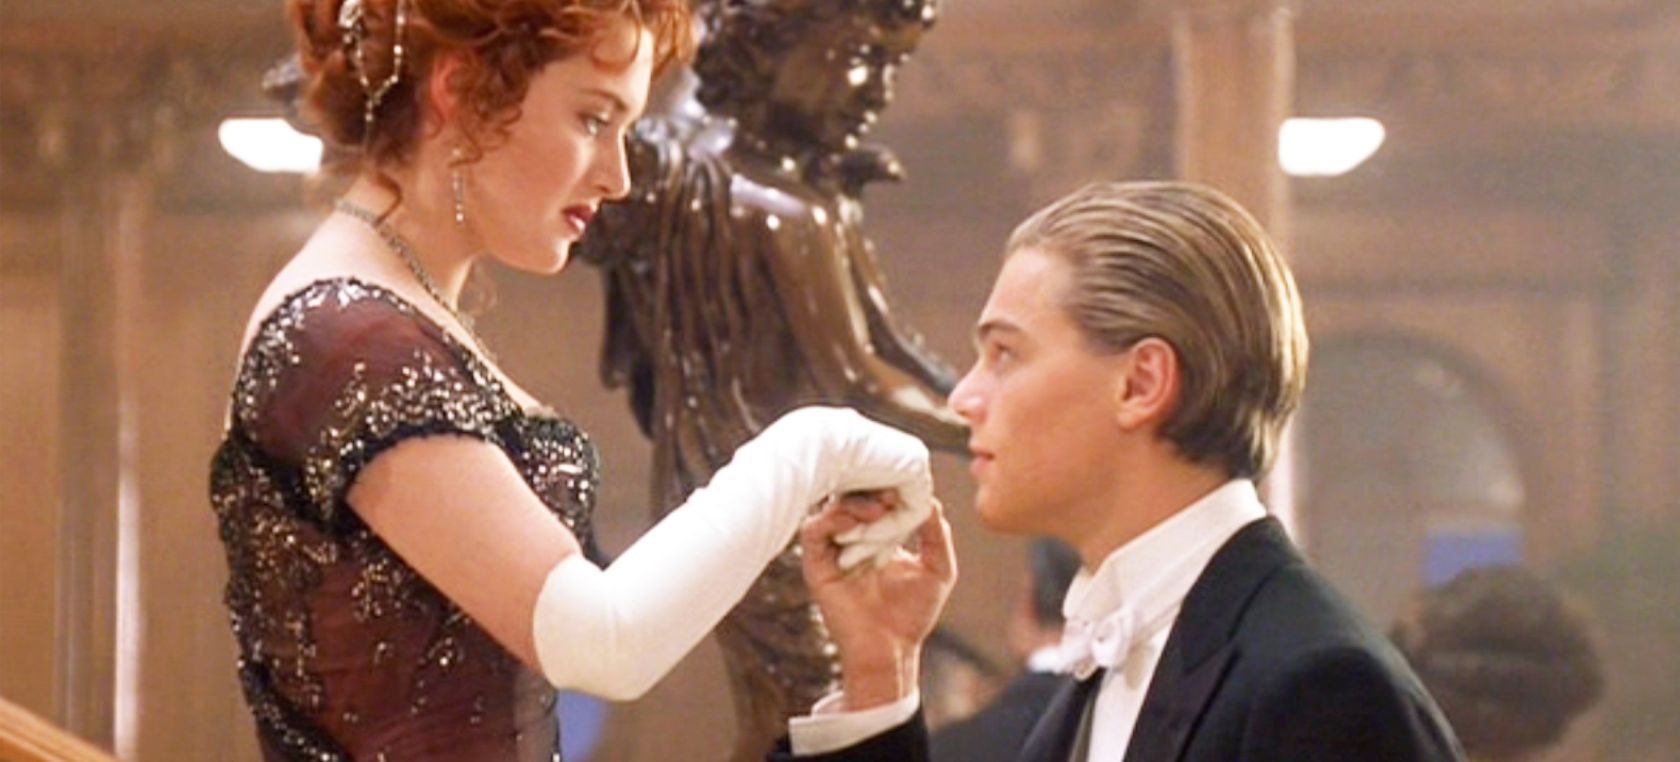 Leonardo DiCaprio y Kate Winslet en una escena de 'Titanic'